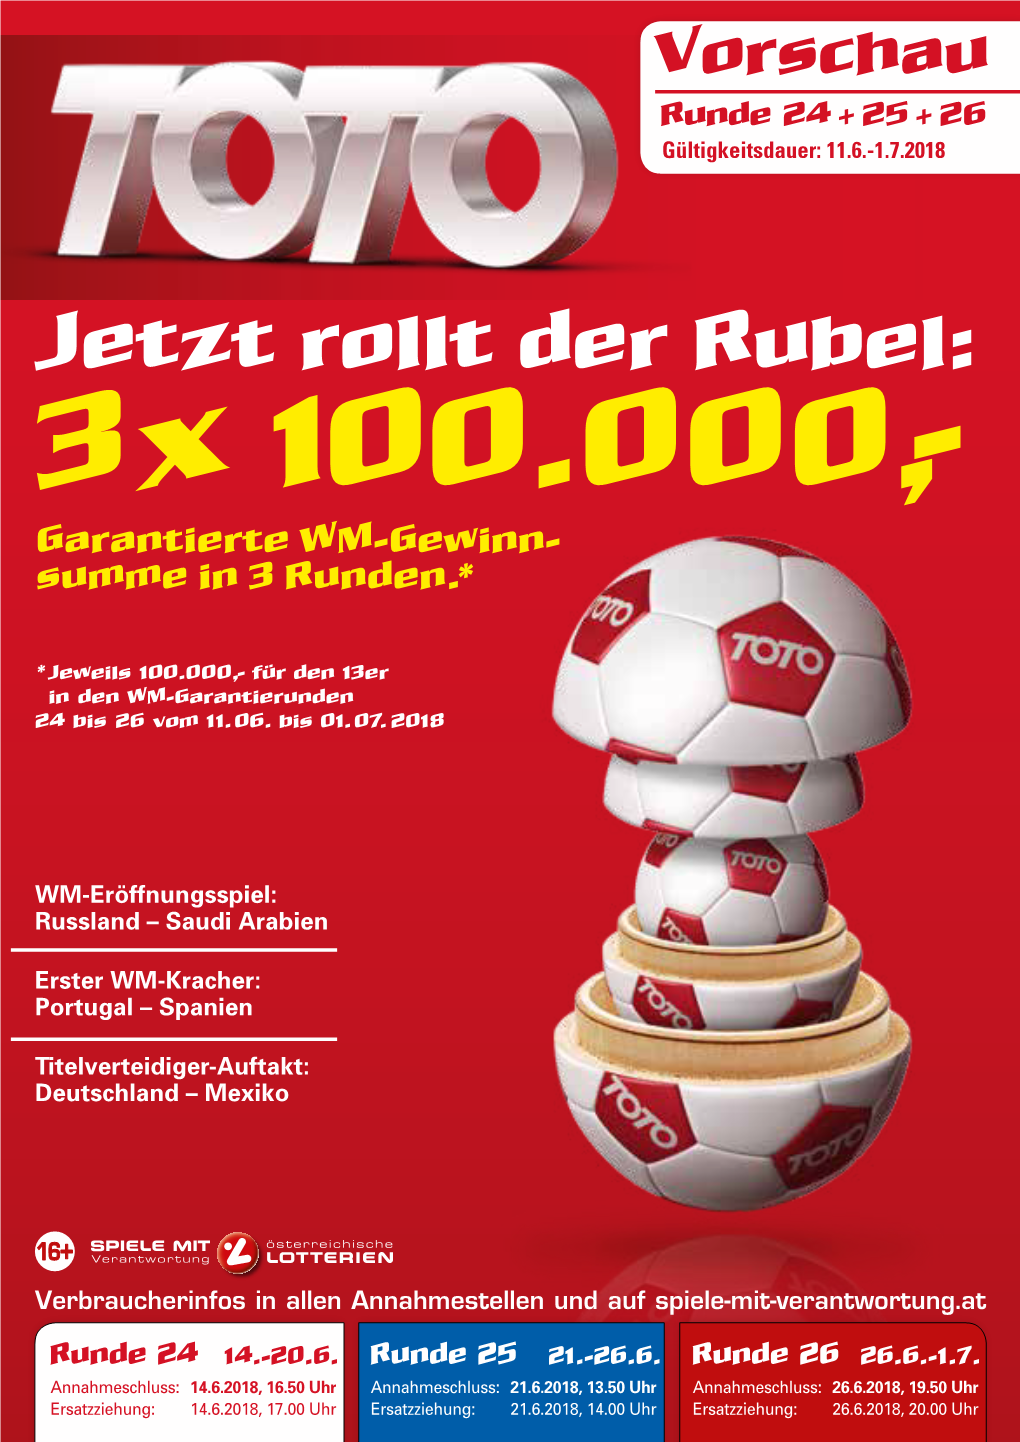 3X 100.000,- Garantierte WM-Gewinn- Summe in 3 Runden.*